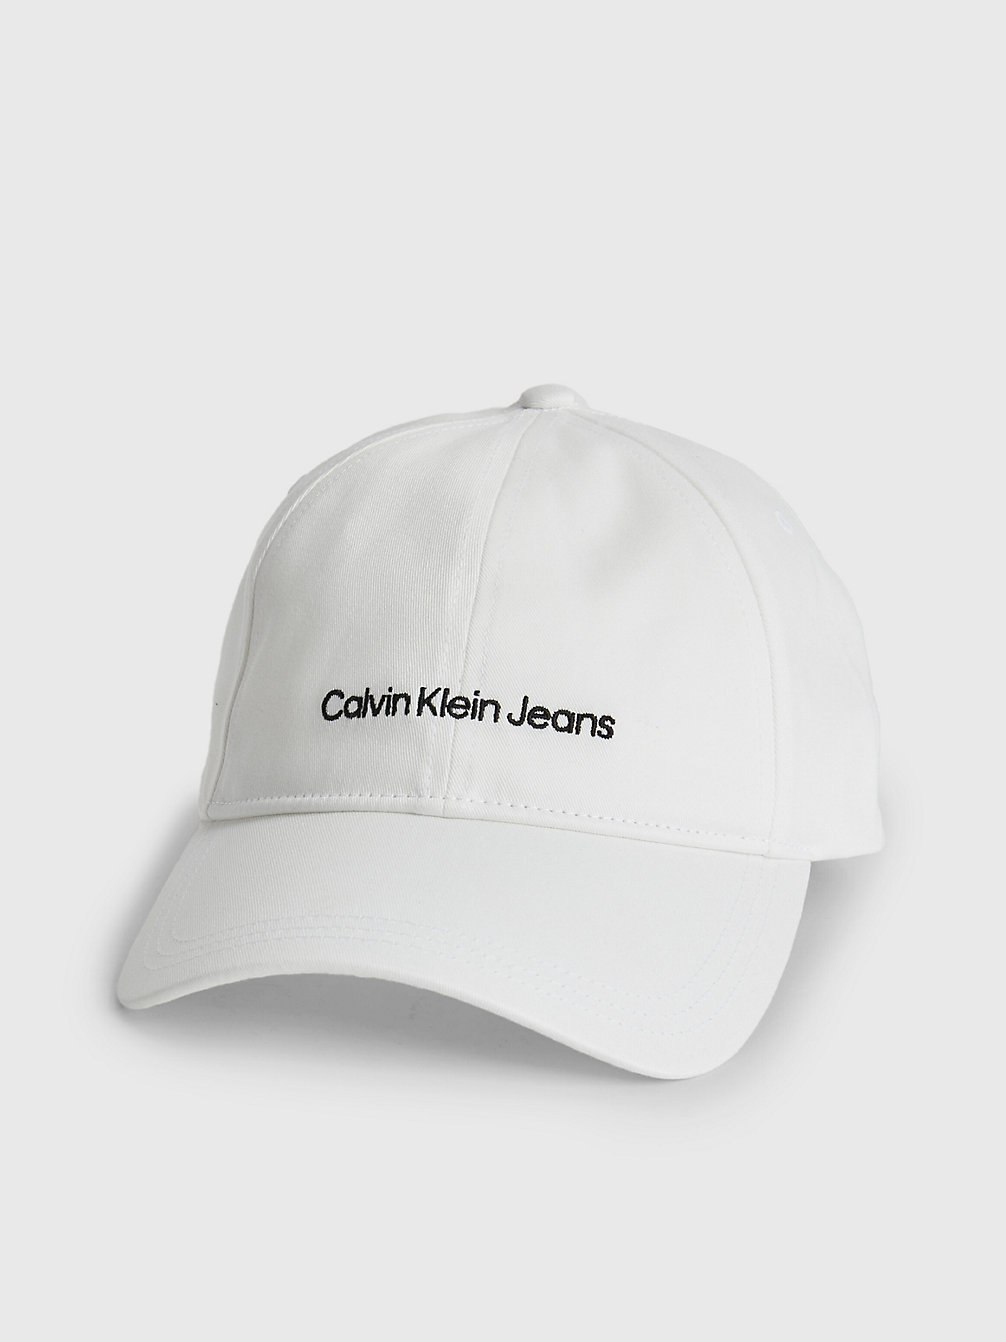 BRIGHT WHITE > Czapka Z Logo Z Bawełny Organicznej > undefined Mężczyźni - Calvin Klein